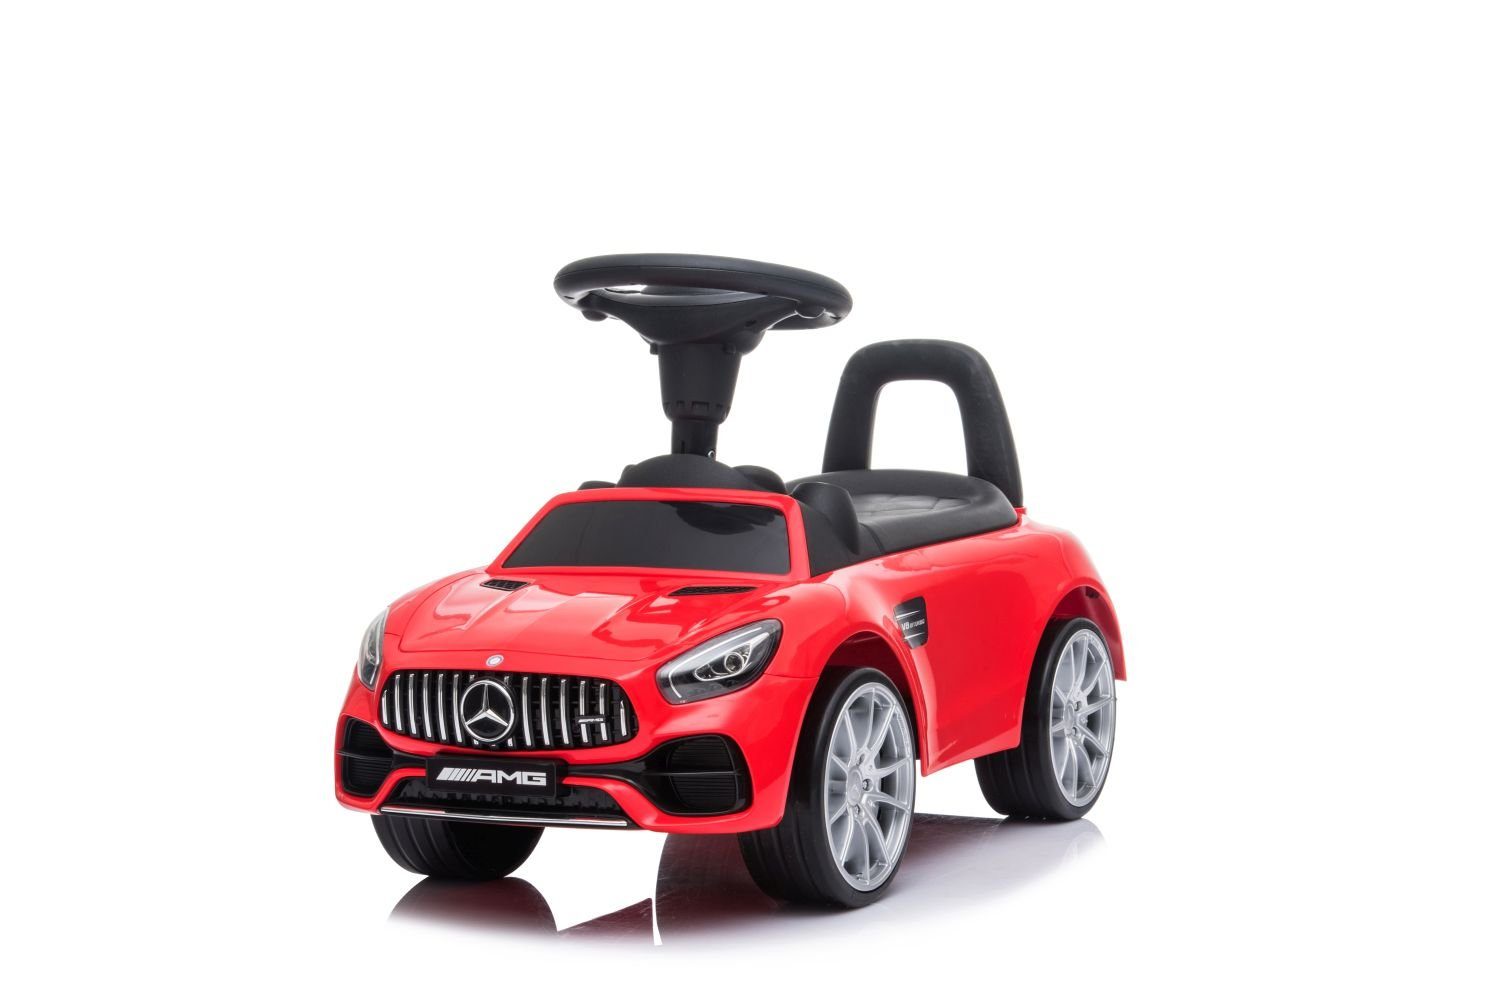 Toys Store Rutscherauto »Rutschfahrzeug Mercedes AMG GT Rutschauto Rot  Kinder ab 24 Monate« online kaufen | OTTO